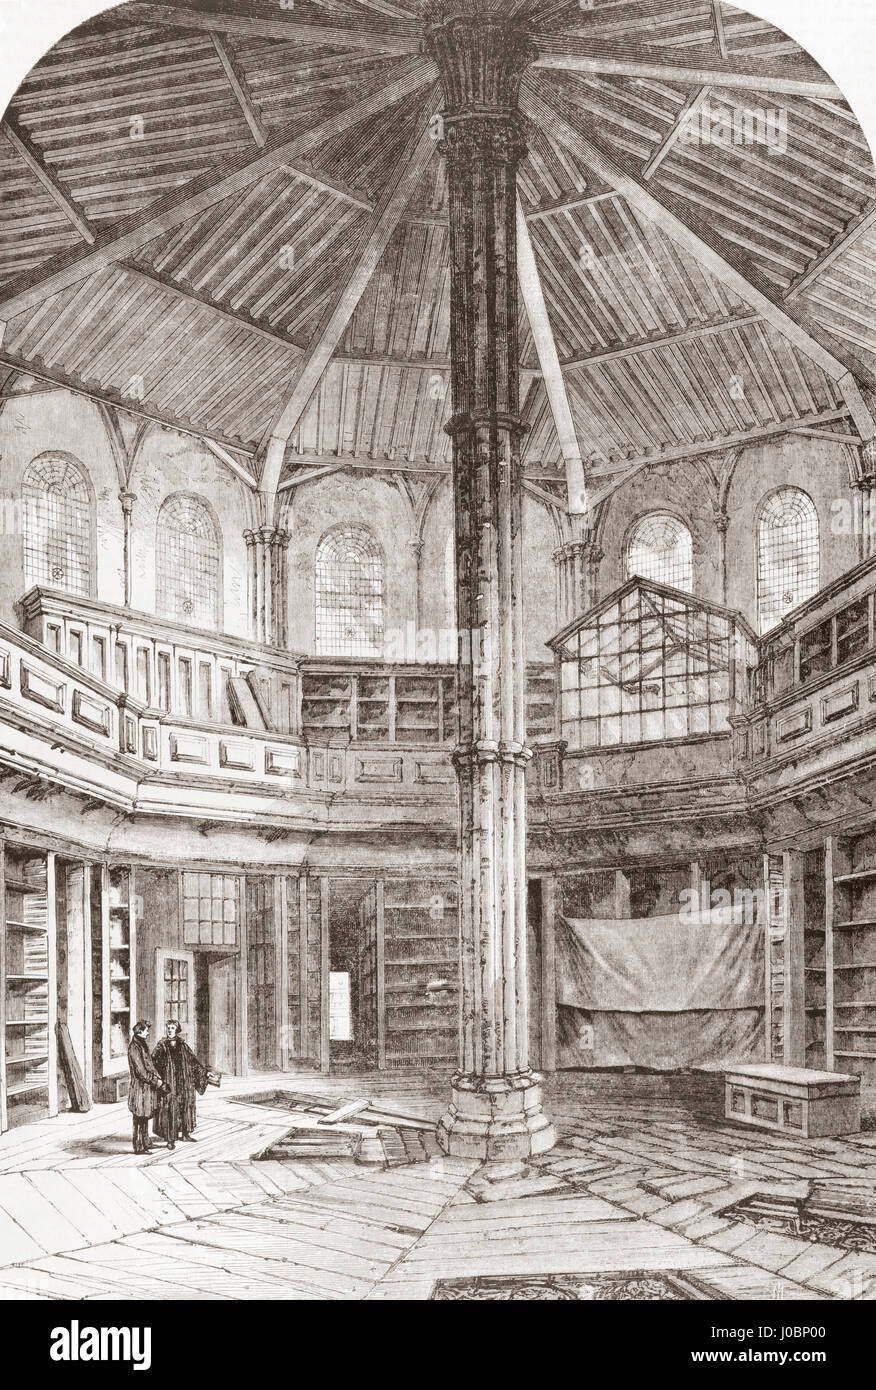 La salle capitulaire, l'abbaye de Westminster, City of Westminster, London, Angleterre au xixe siècle. À partir de l'Univers Illustre publié 1867. Banque D'Images